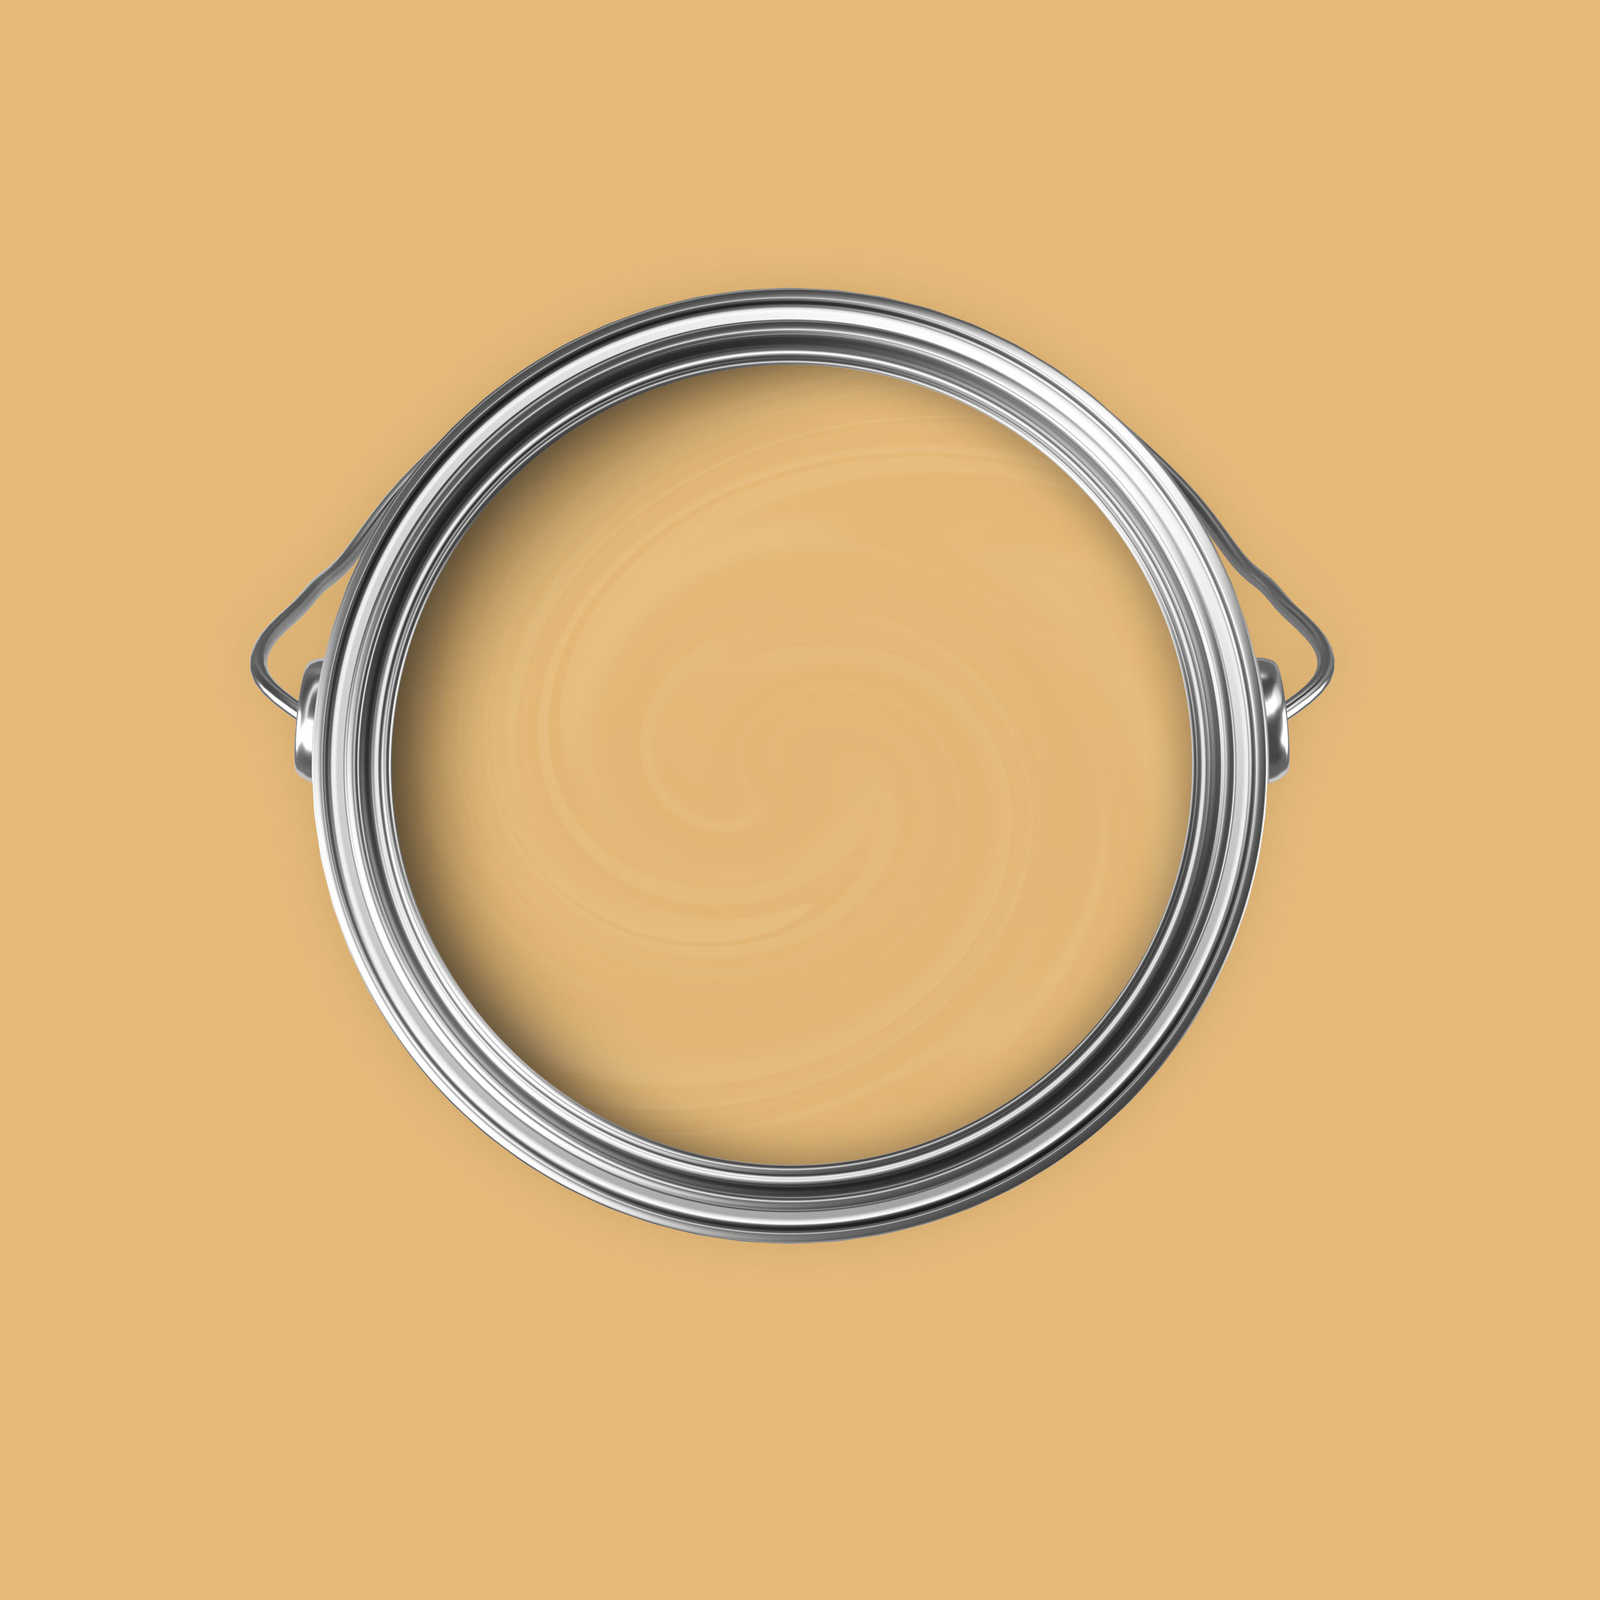             Premium Wandfarbe aufweckendes Senfgelb »Beige Orange/Sassy Saffron« NW811 – 5 Liter
        